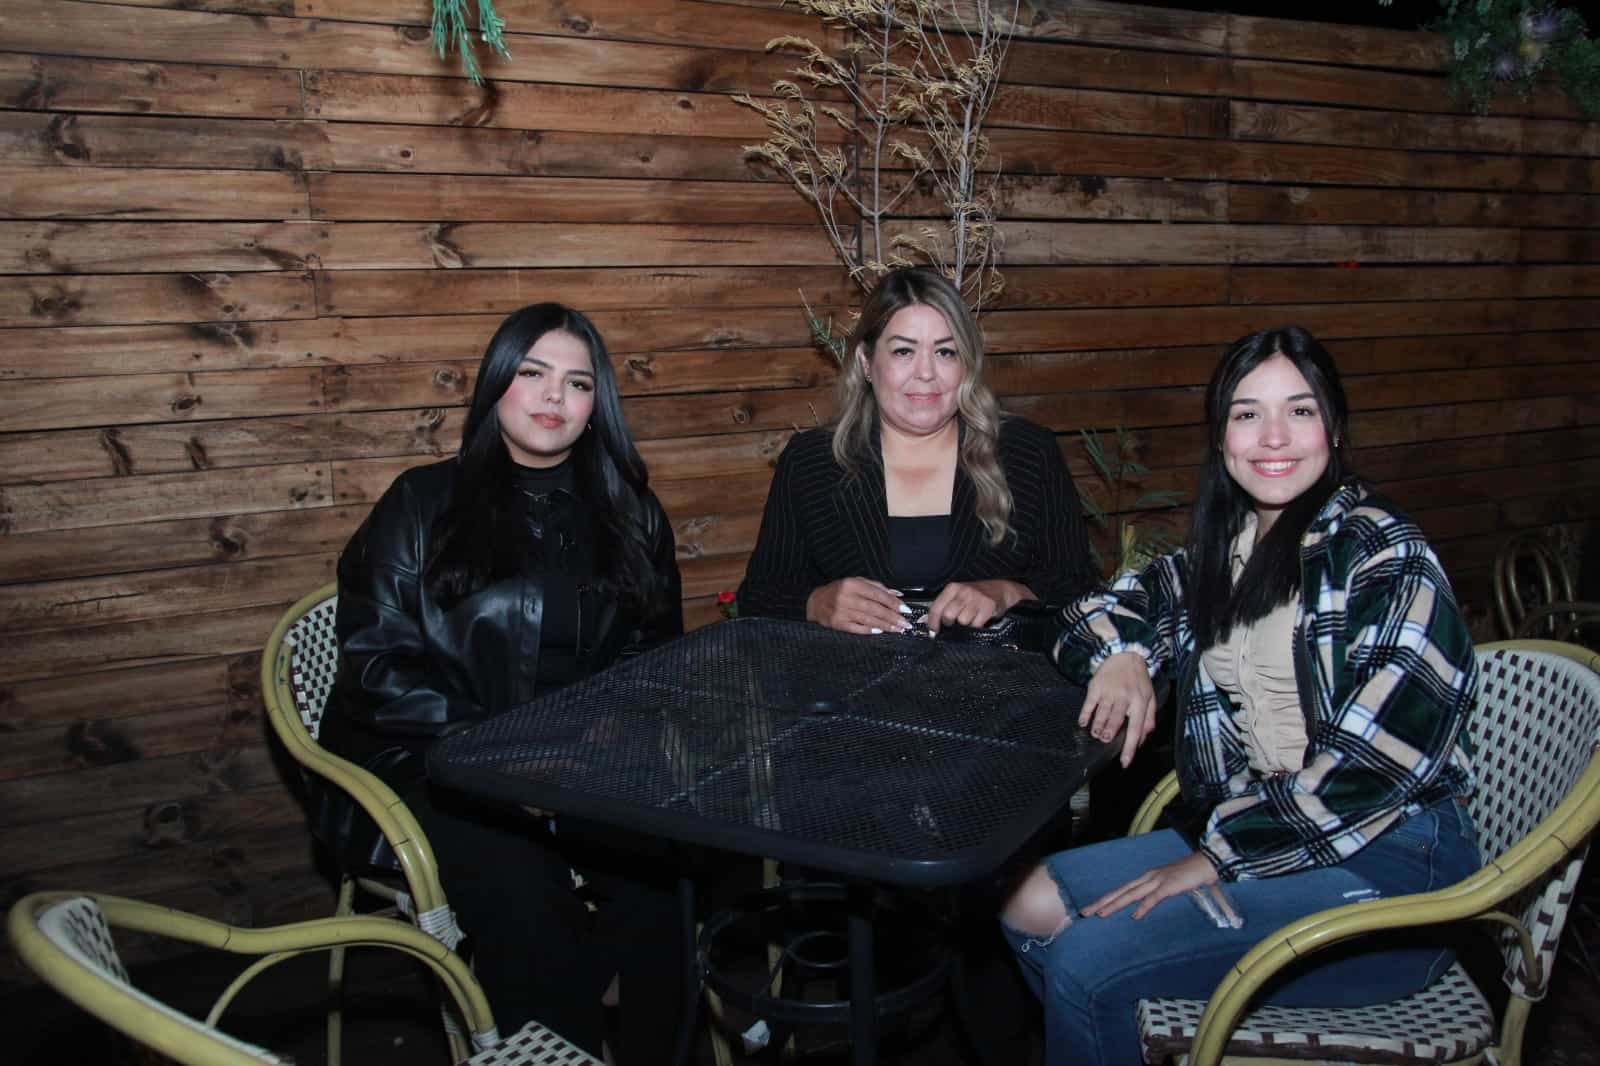 Amena convivencia con amigos en Casa Garmendia, Café y Churrería